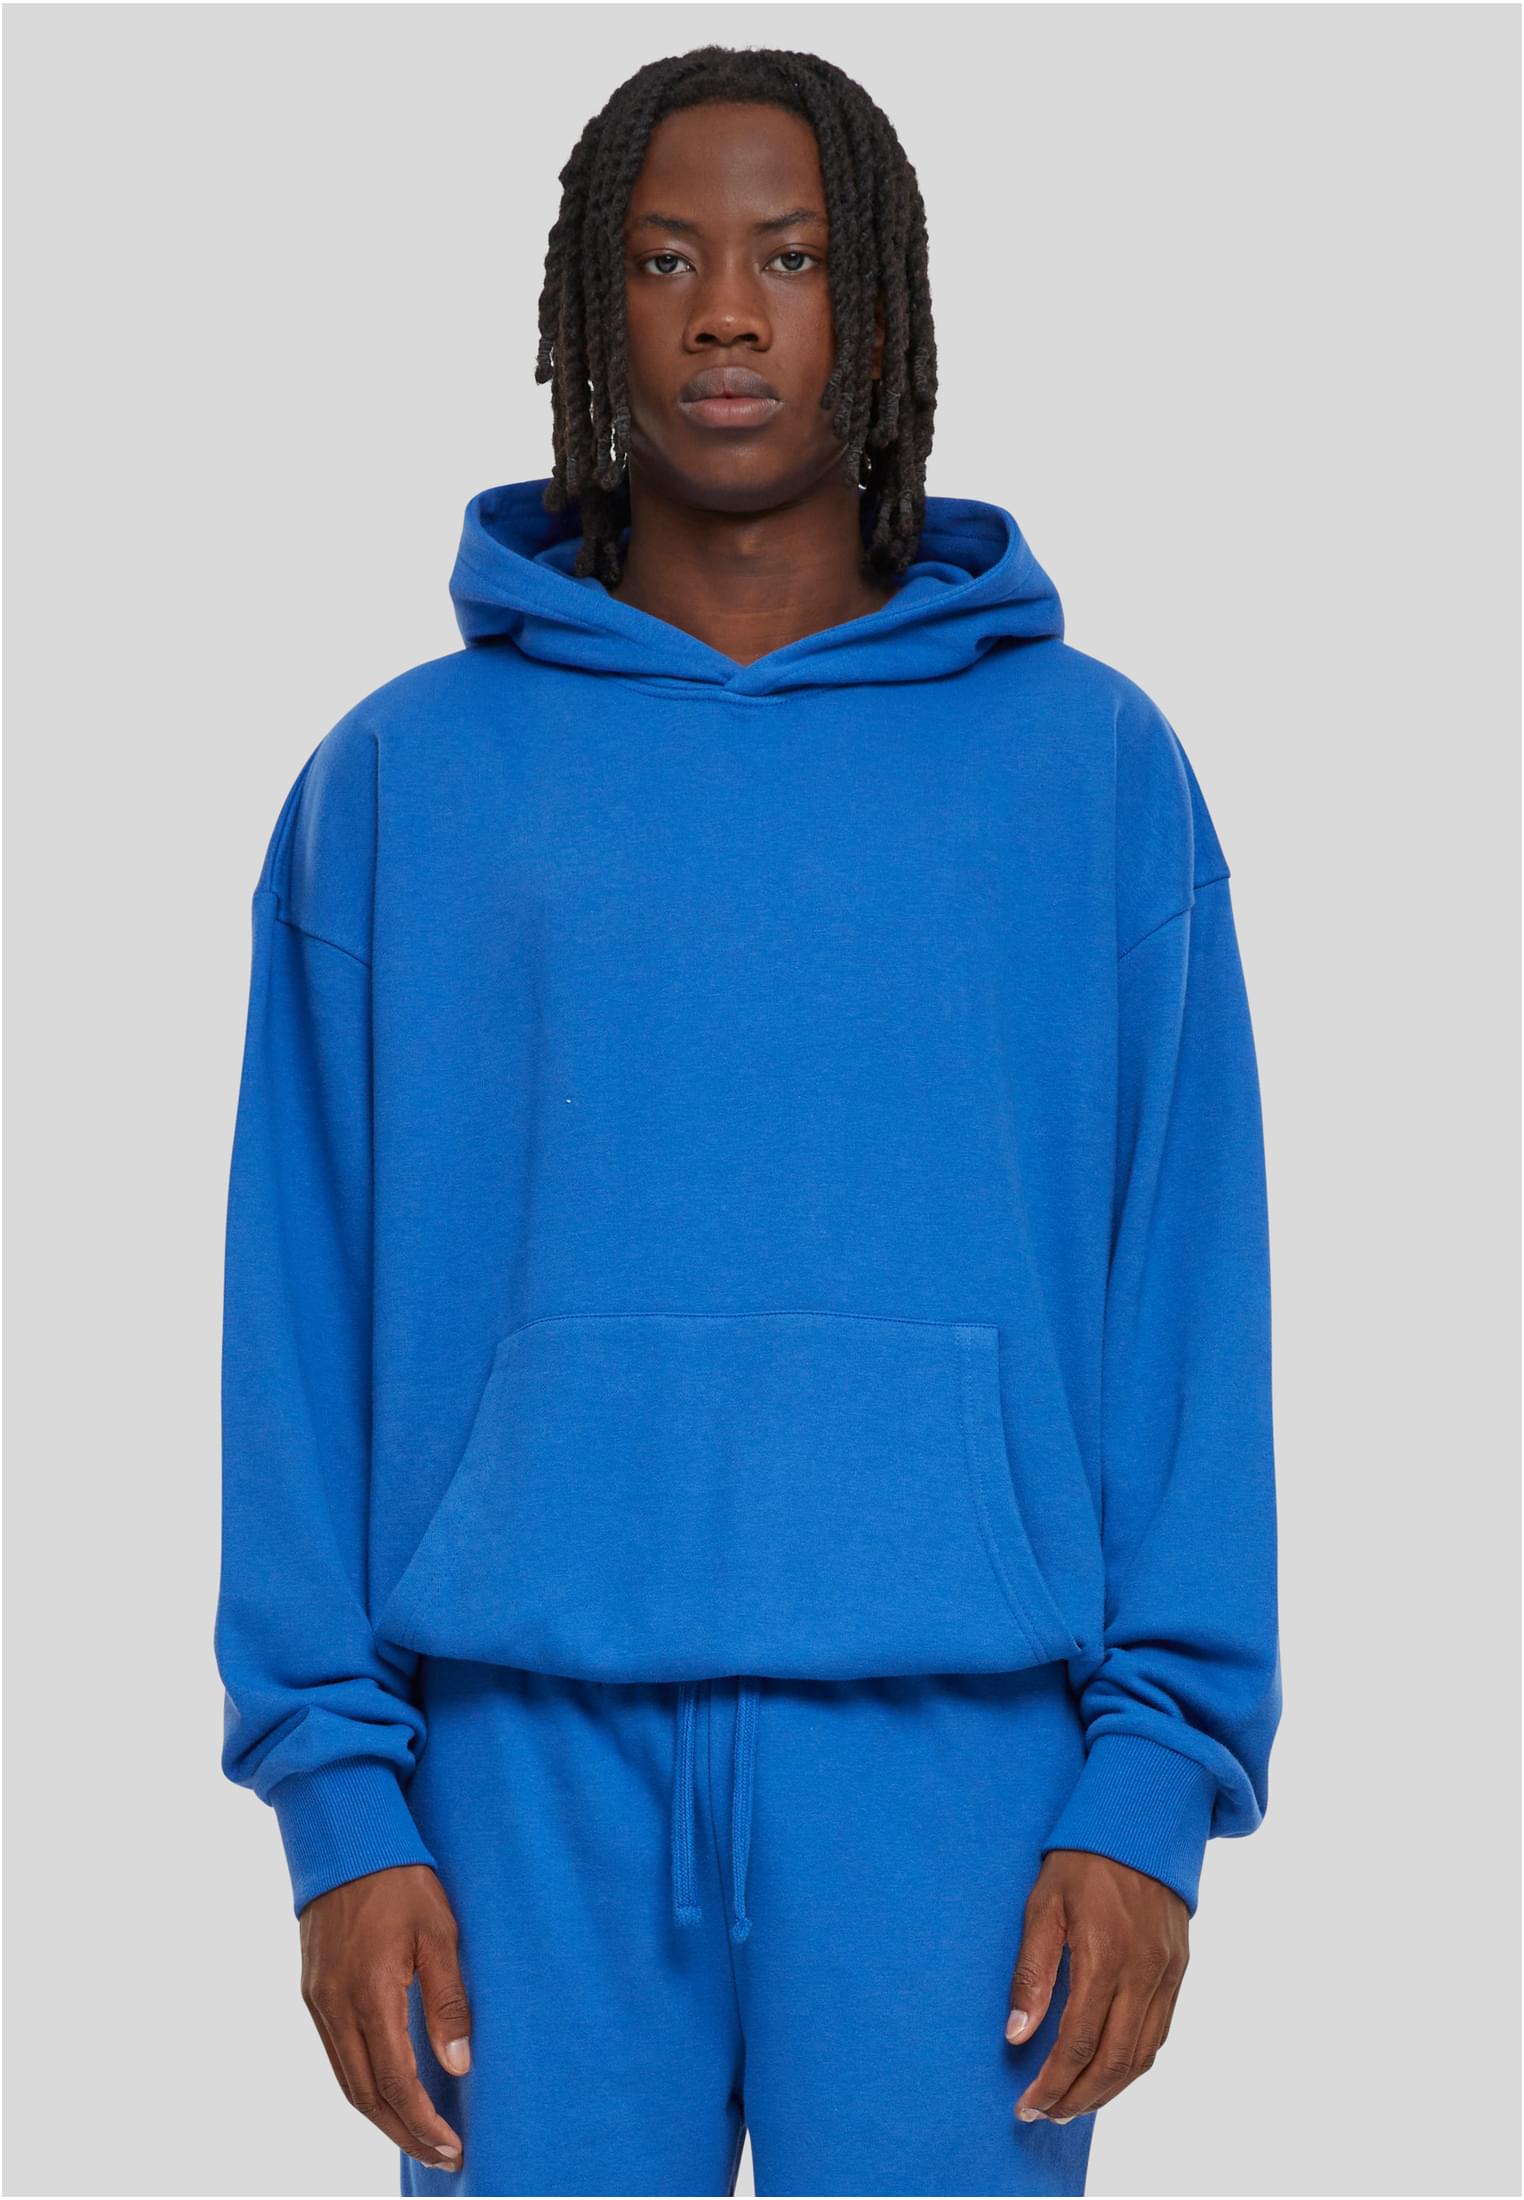 Men's Light Terry Hoody Sweatshirt - Blue